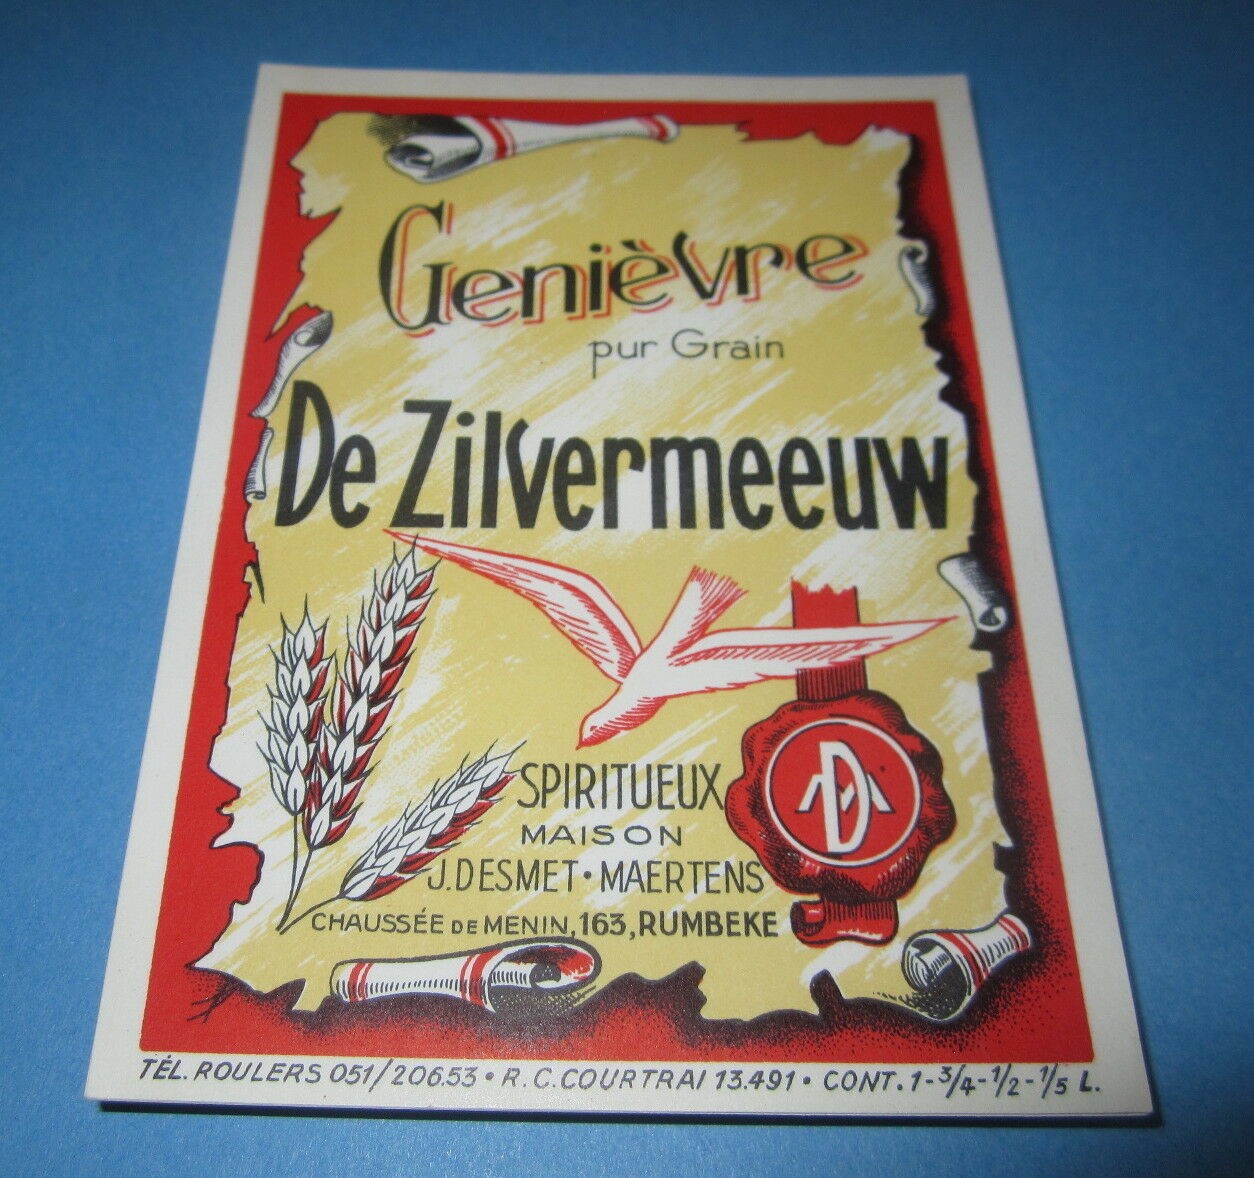  Lot of 100 Old Vintage Genievre ZILVERMEEUW - ...